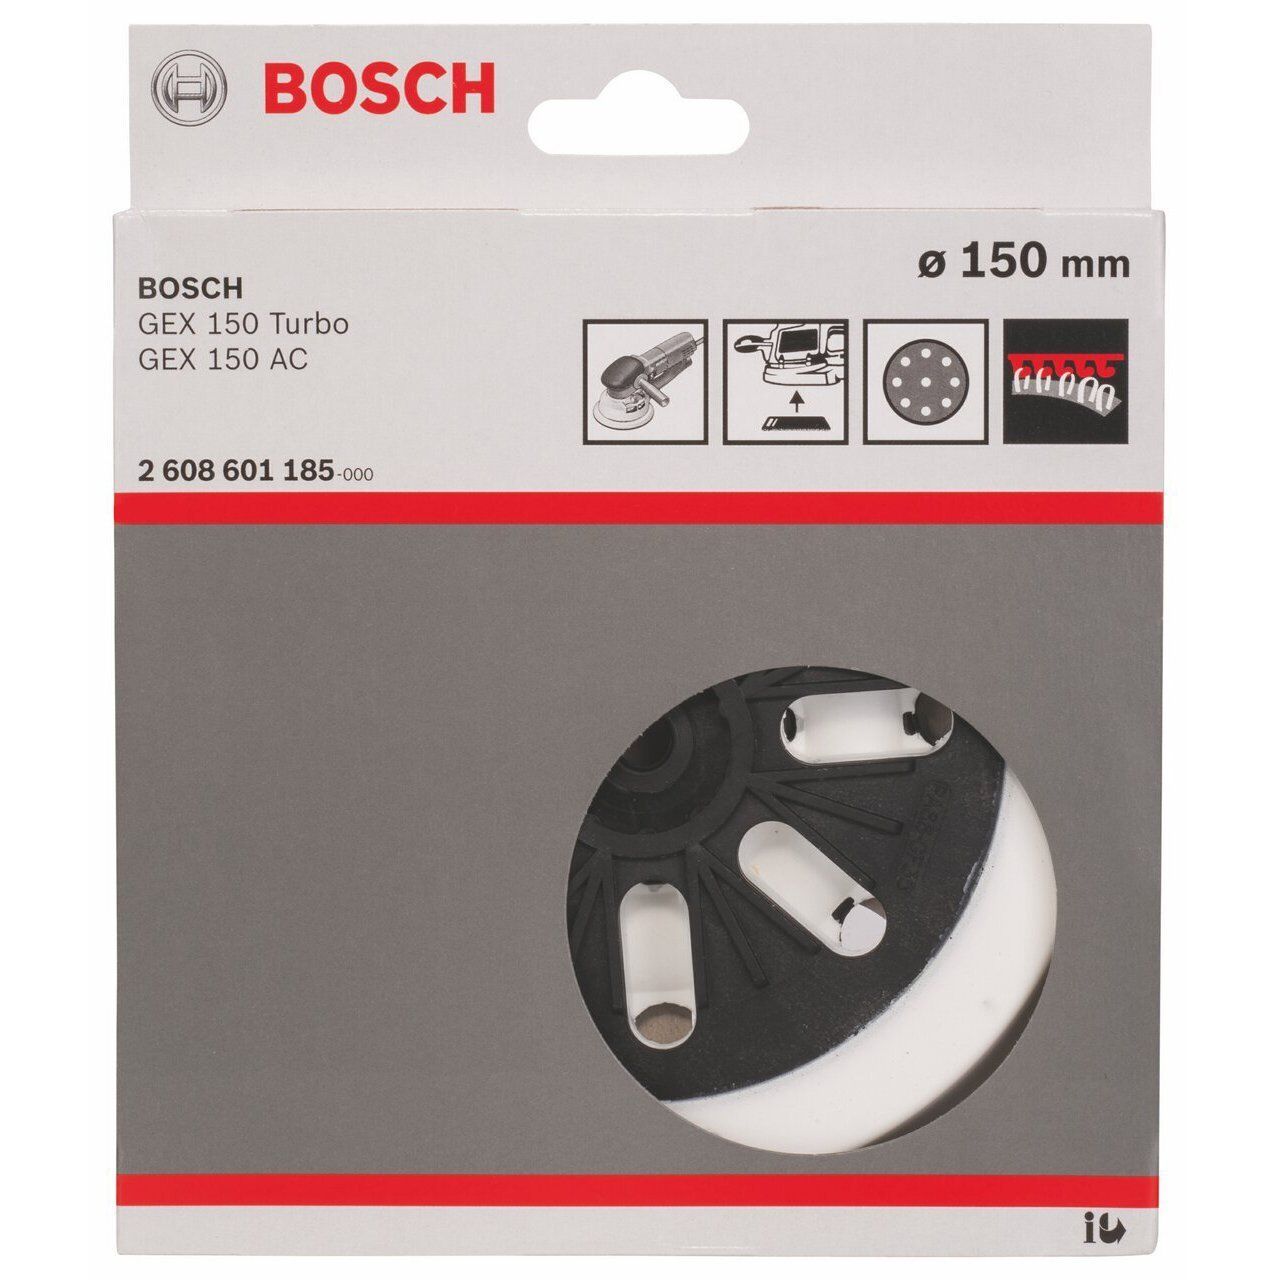 Bosch Sanding pad Medium Hard for random orbital sanders, 150 mm 2608601185 Power Tool Services